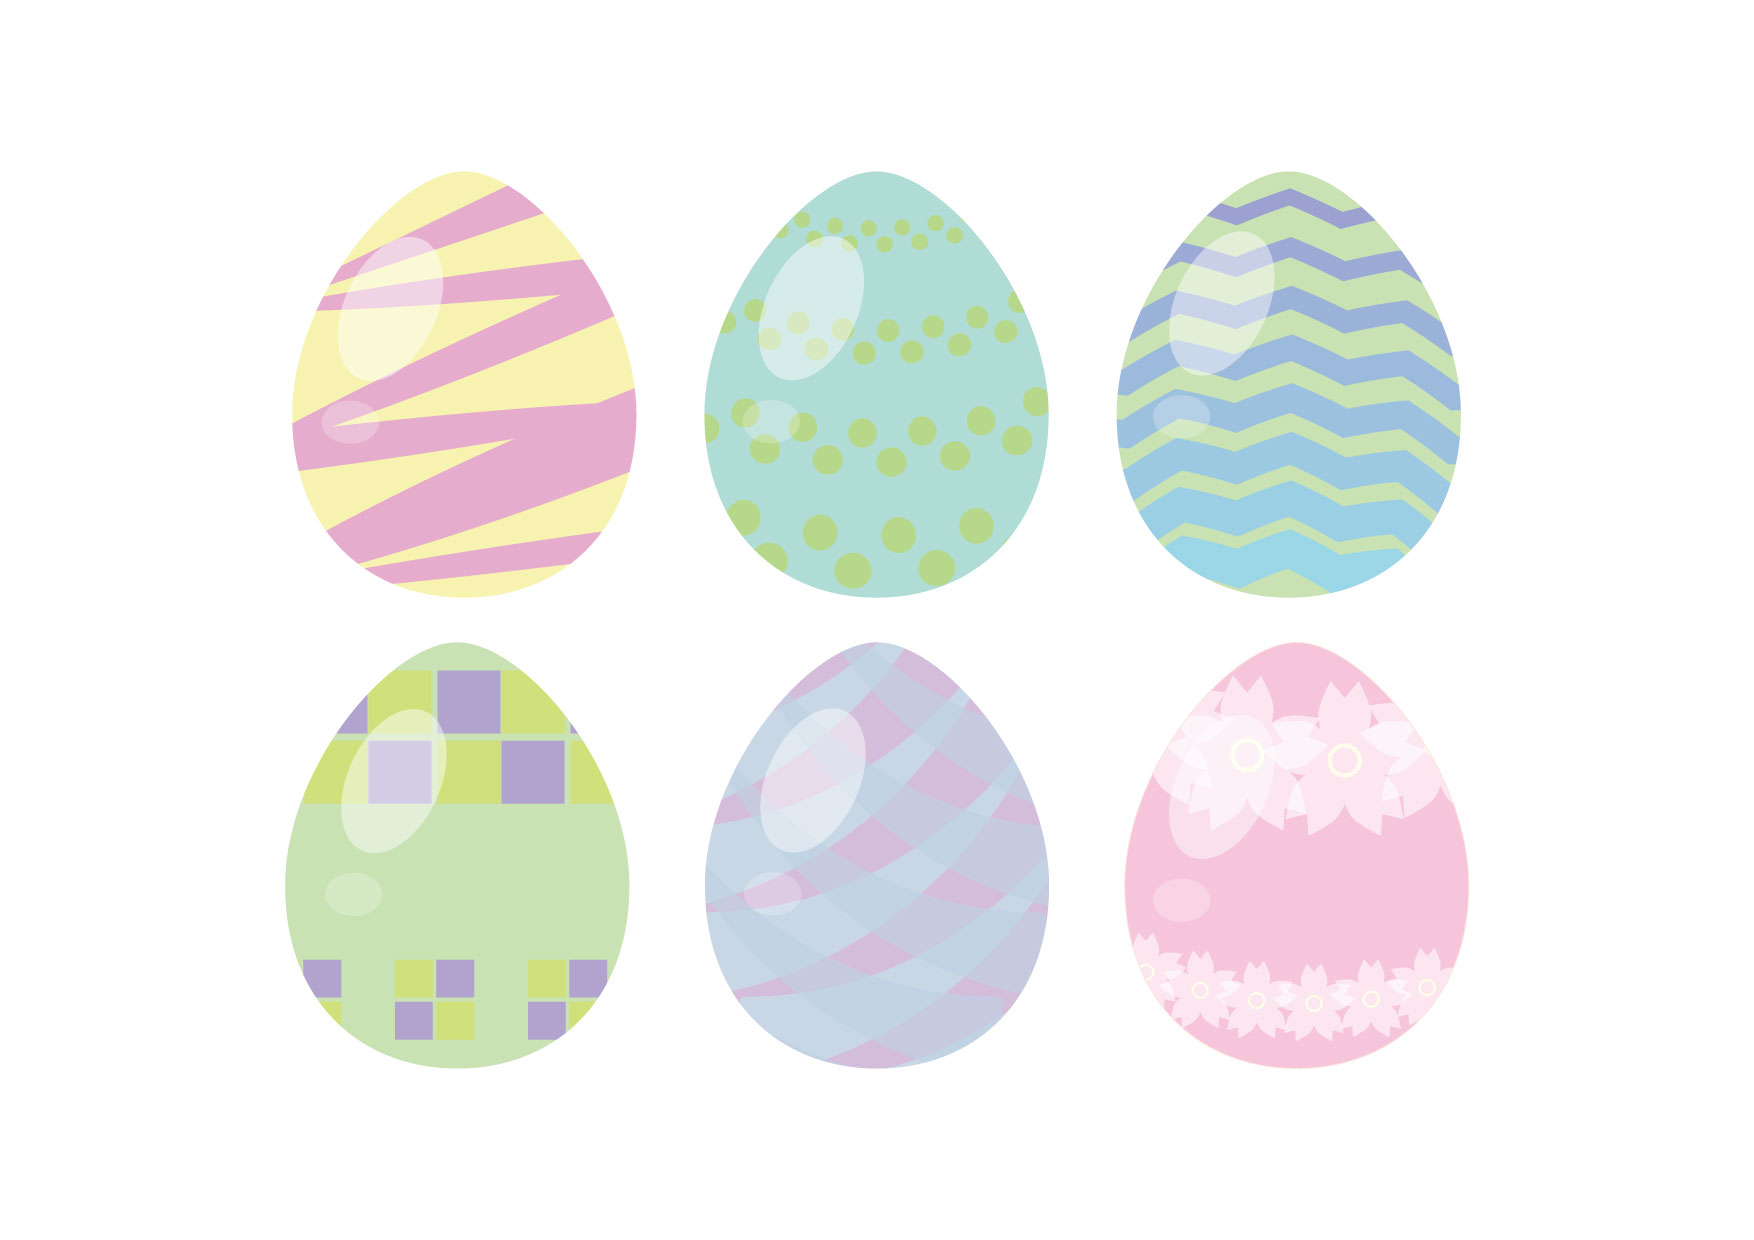 可愛いイラスト無料 イースターエッグ 6つ Free Illustration 6 Easter Eggs イラストダウンロード